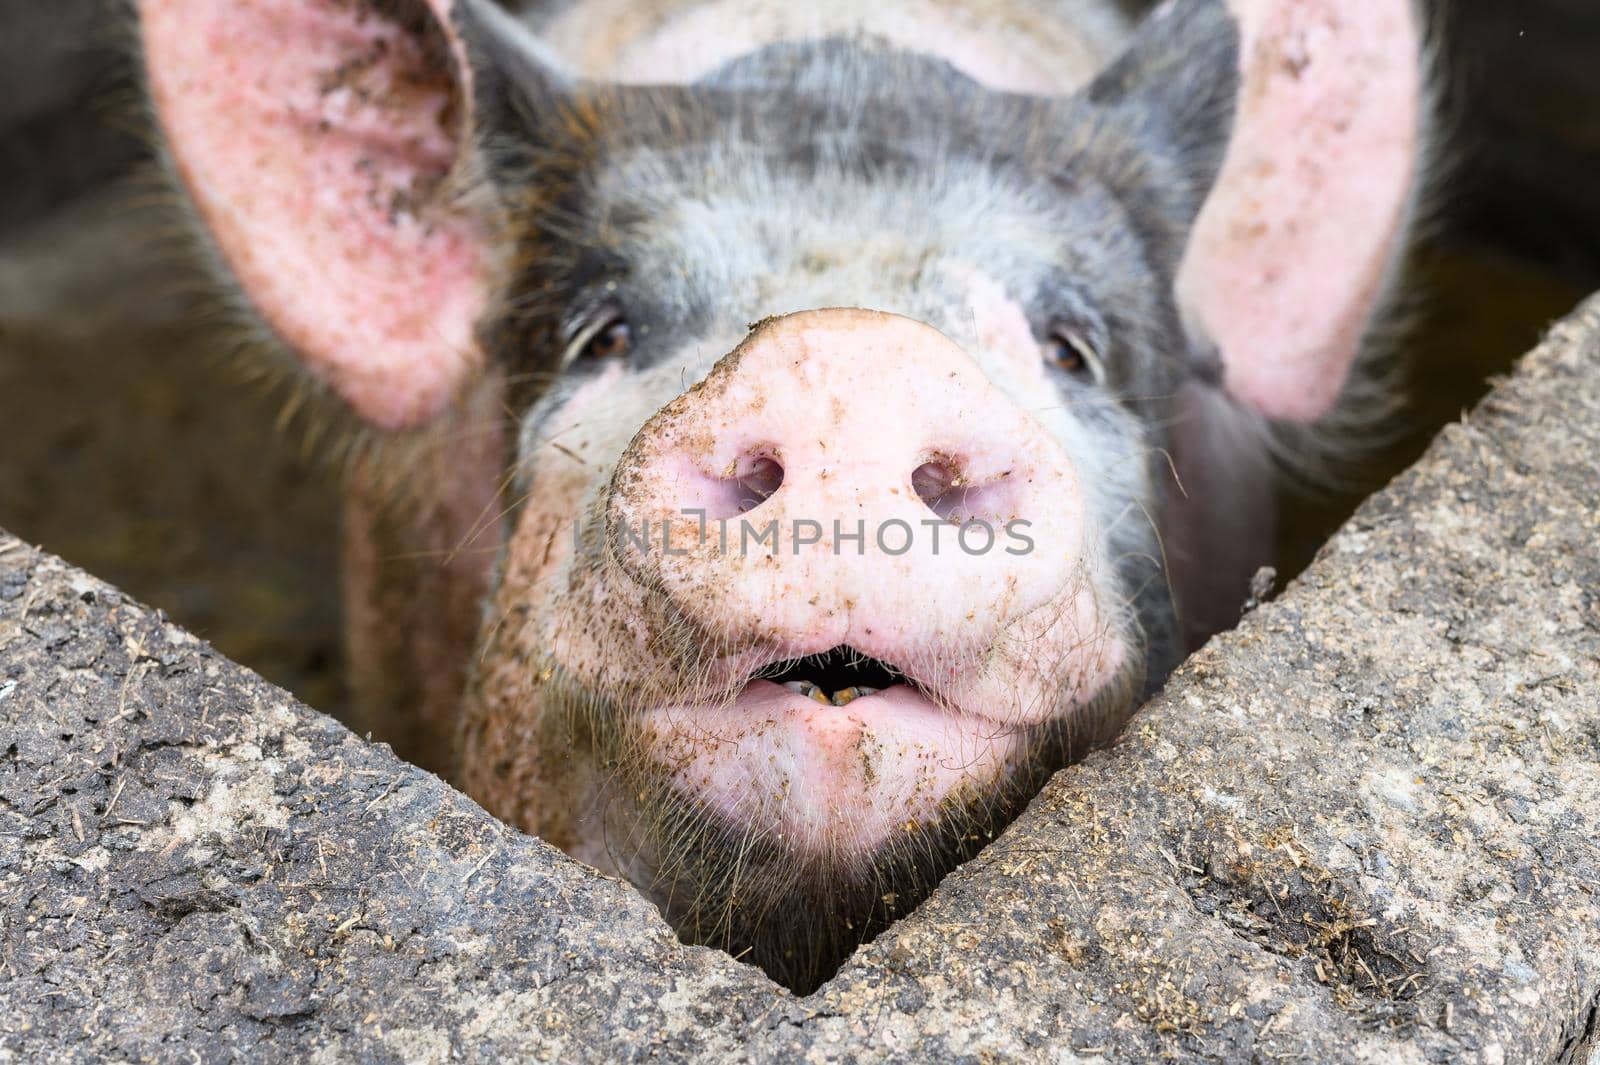 Big pig on a farm in a pigsty